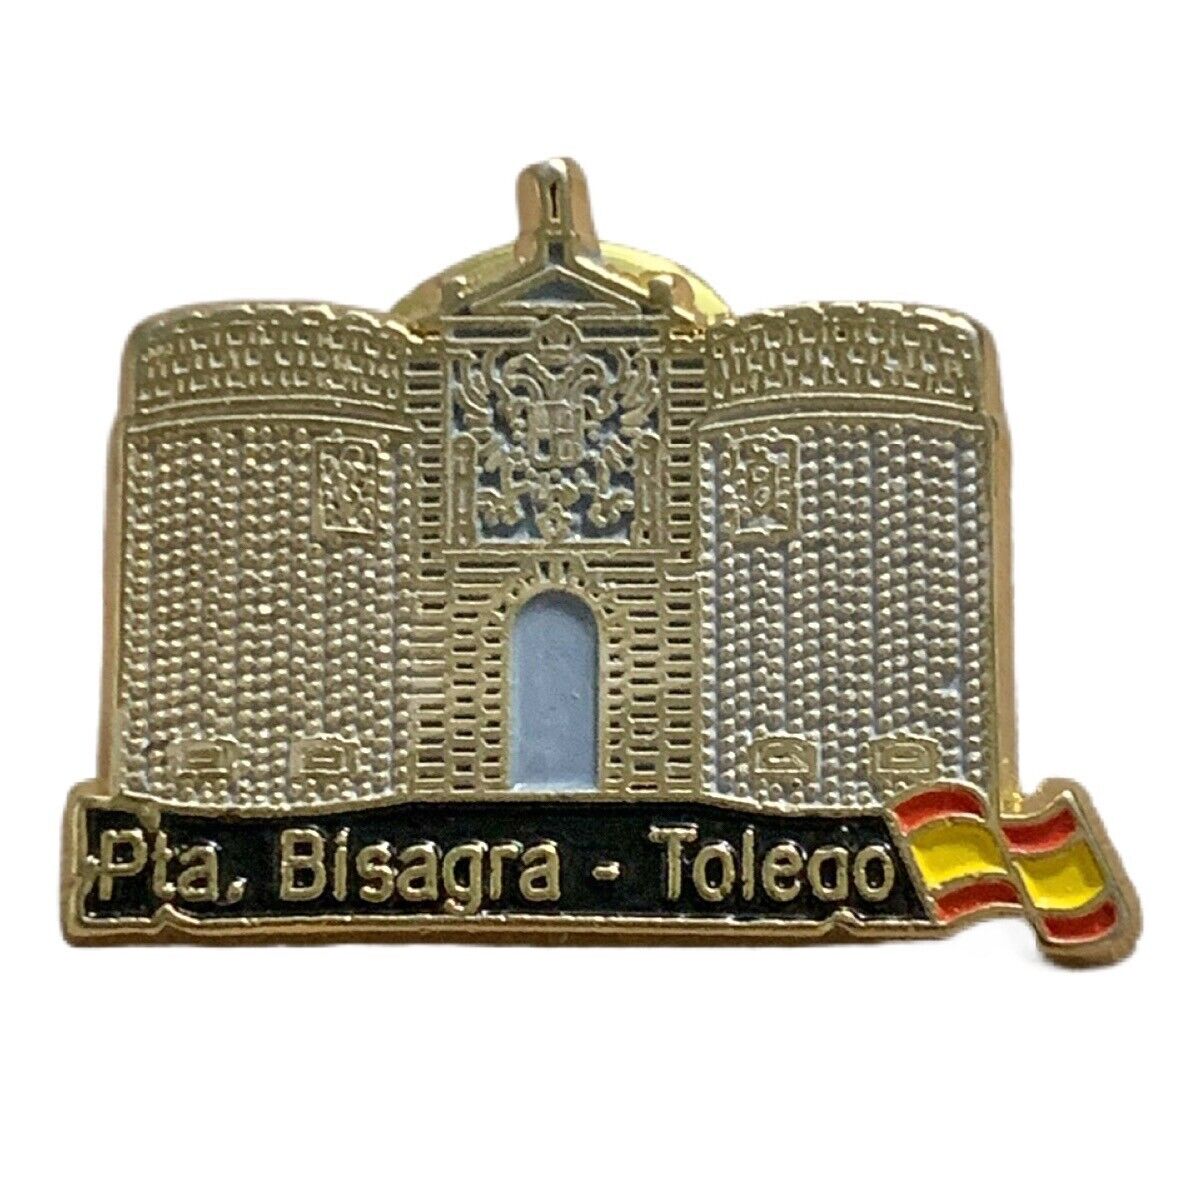 Vintage Puerta de Bisagra Toledo Spain Scenic Travel Souvenir Pin